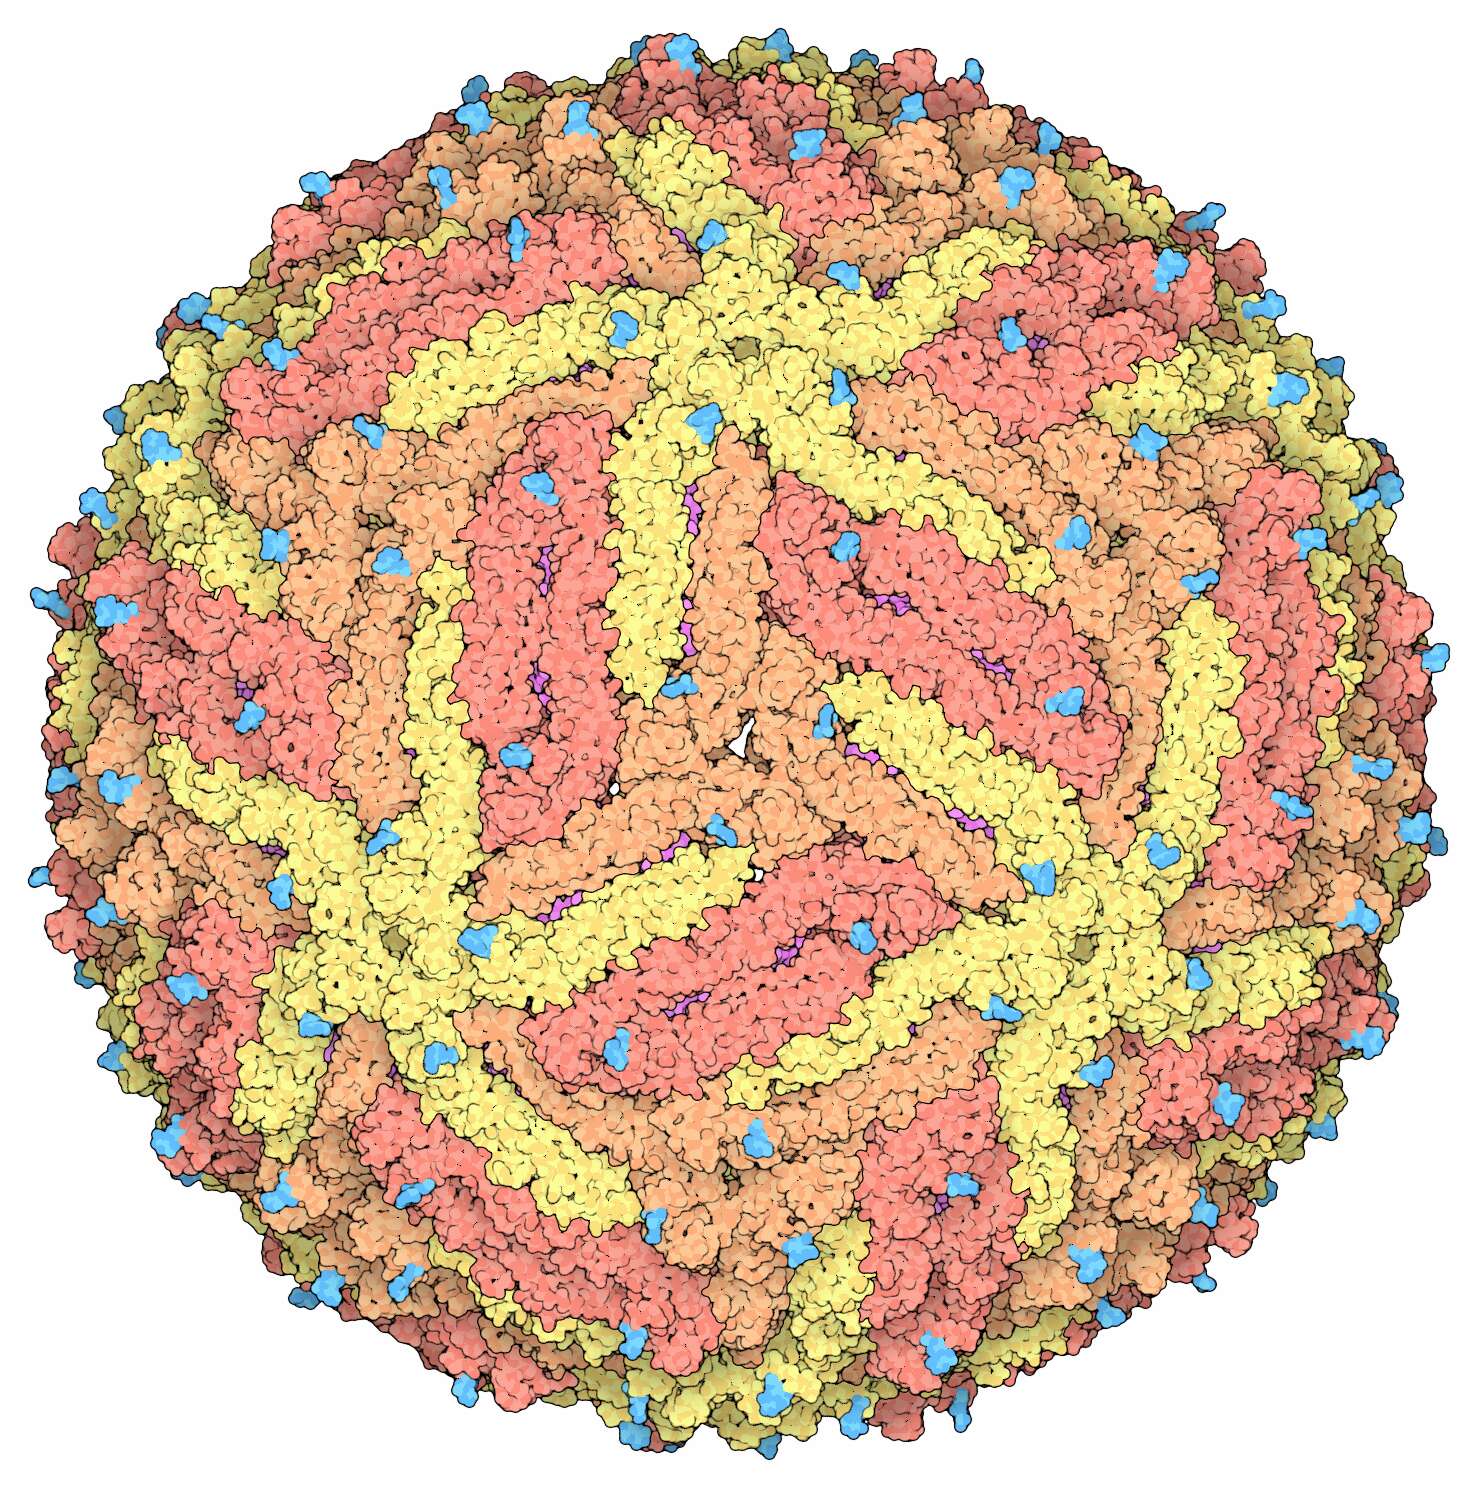 Image of Zika virus